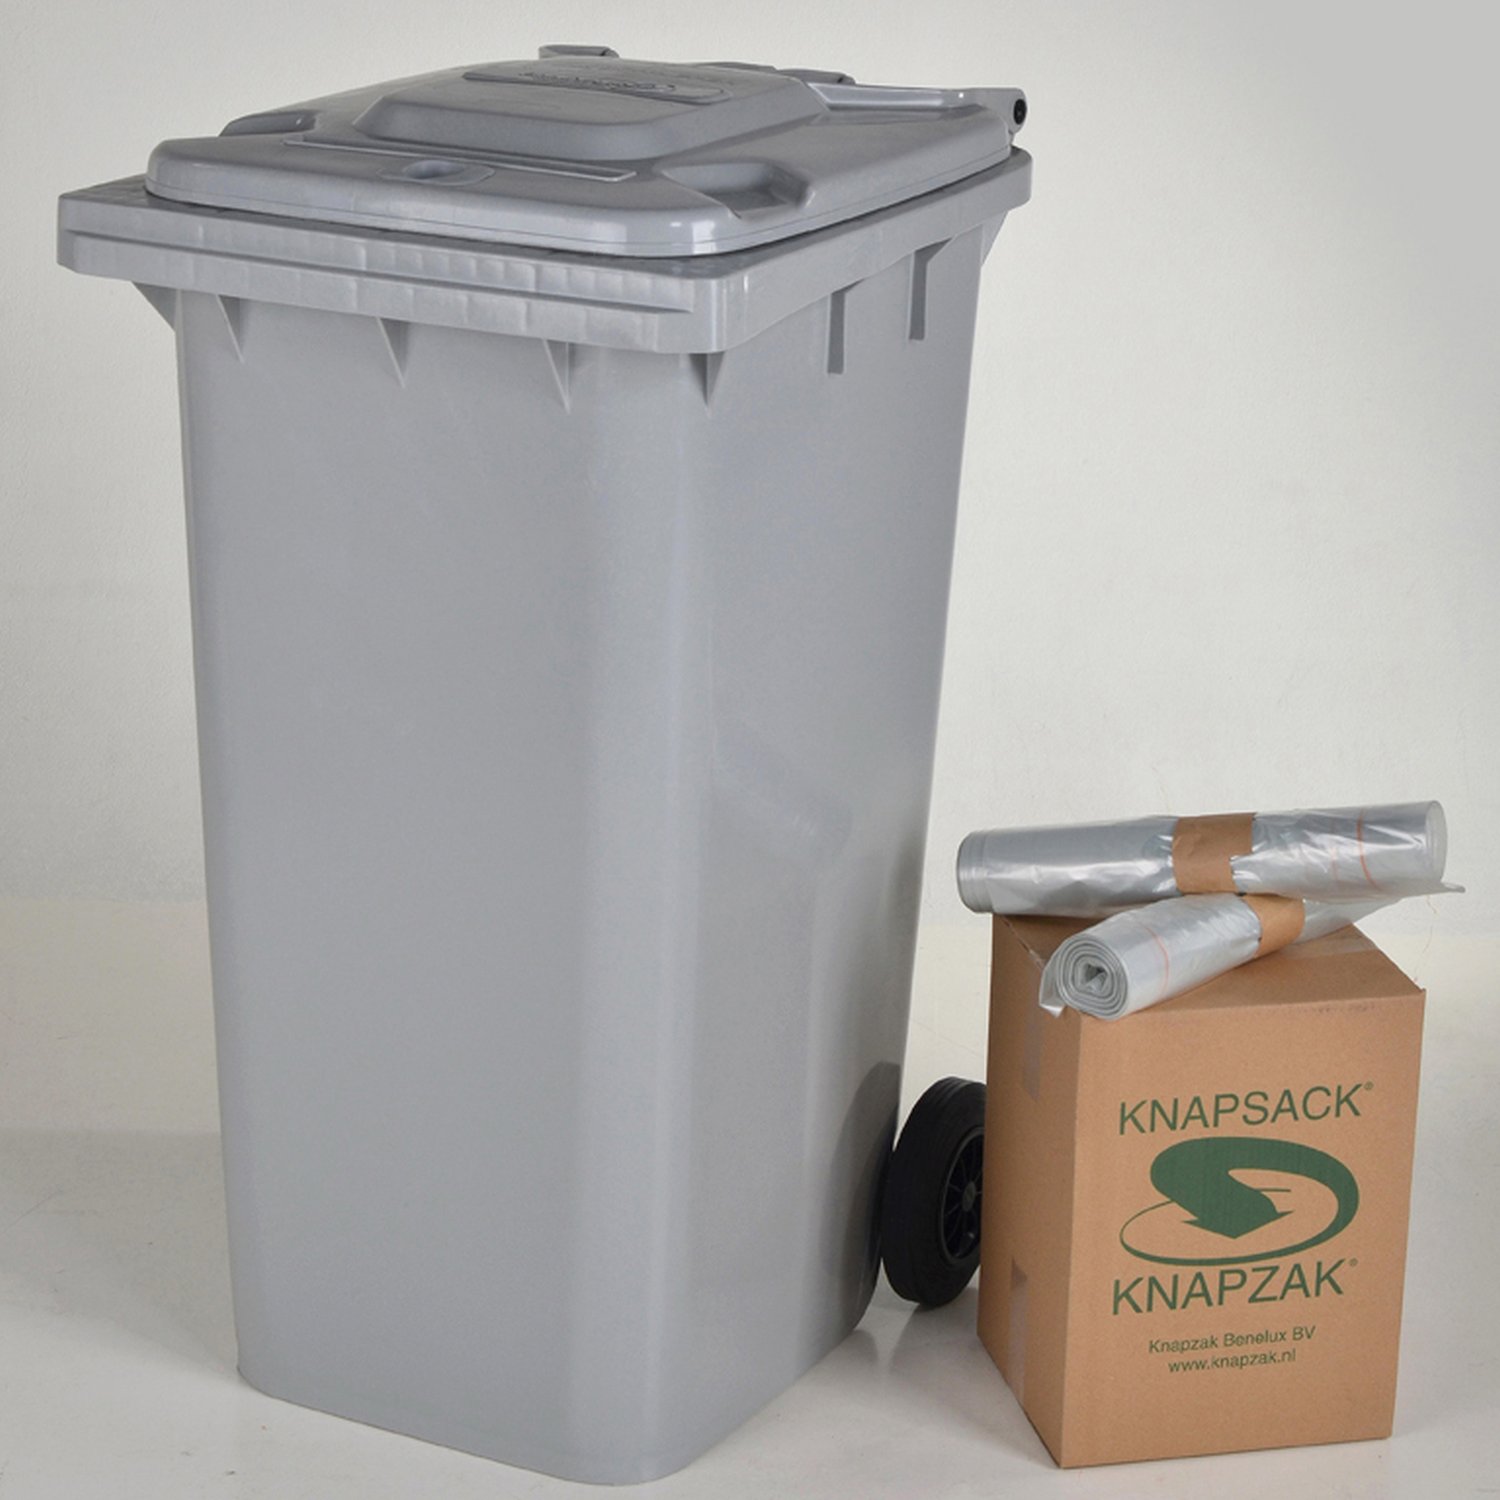 KCNP240-72 Housses conteneurs Garder votre conteneur propre avec nos housses conteneurs.
Avec notre housse conteneur, vous pouvez collecter différentes sortes de déchets, les déchets résiduels, les emballages plastiques ou encore le papier. Ces housses sont disponibles en litrage de 140 litres jusqu’à 1100 litres. Une autre qualité de ces housses conteneurs est qu’elle laisse votre conteneur propre et qu’elle limite les nuisances olfactives.